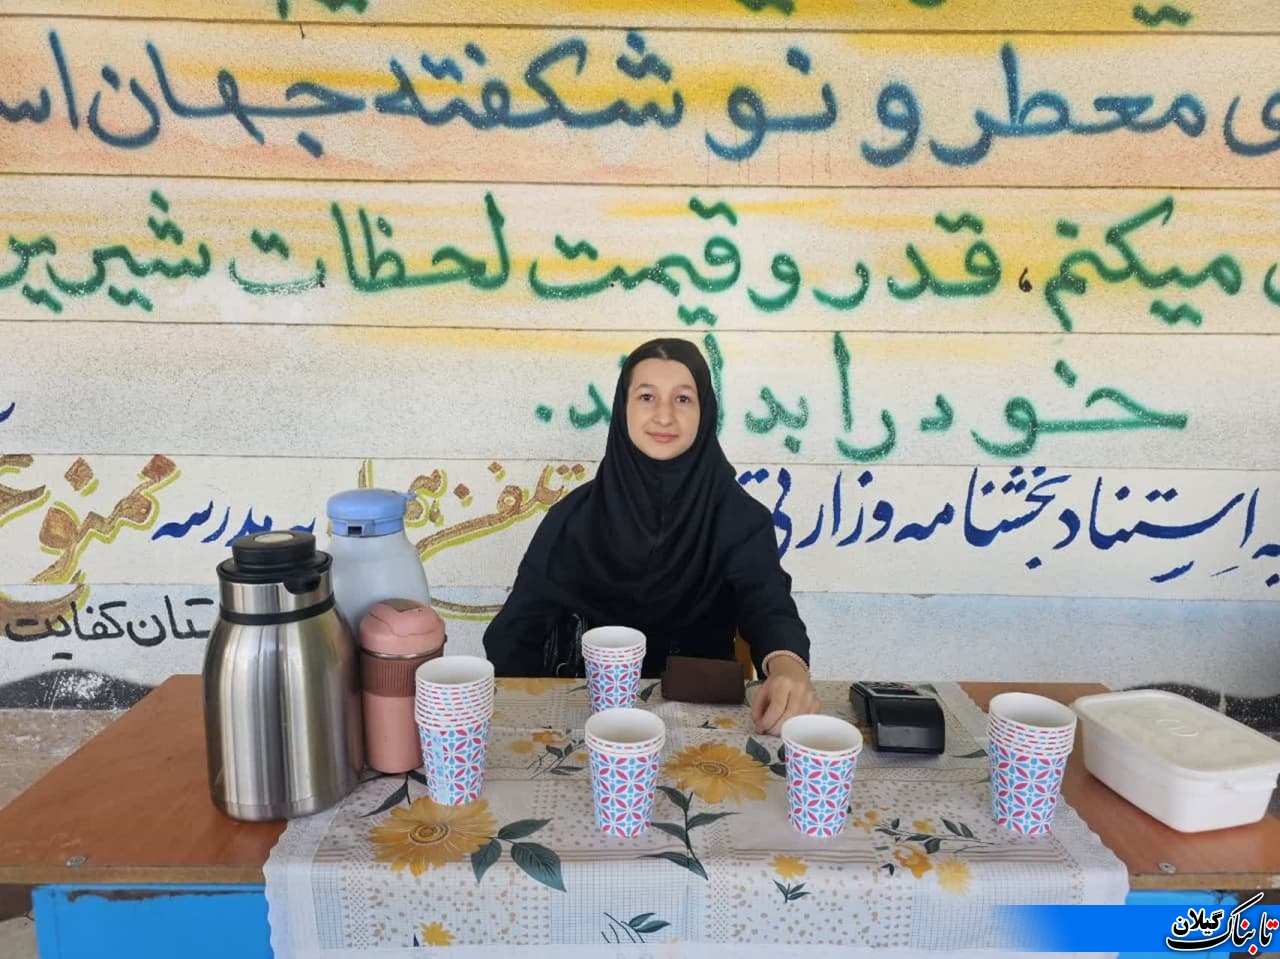 گزارش تصویری بازارچه کارآفرینی در دبیرستان کفایت تقی زاده رودسر